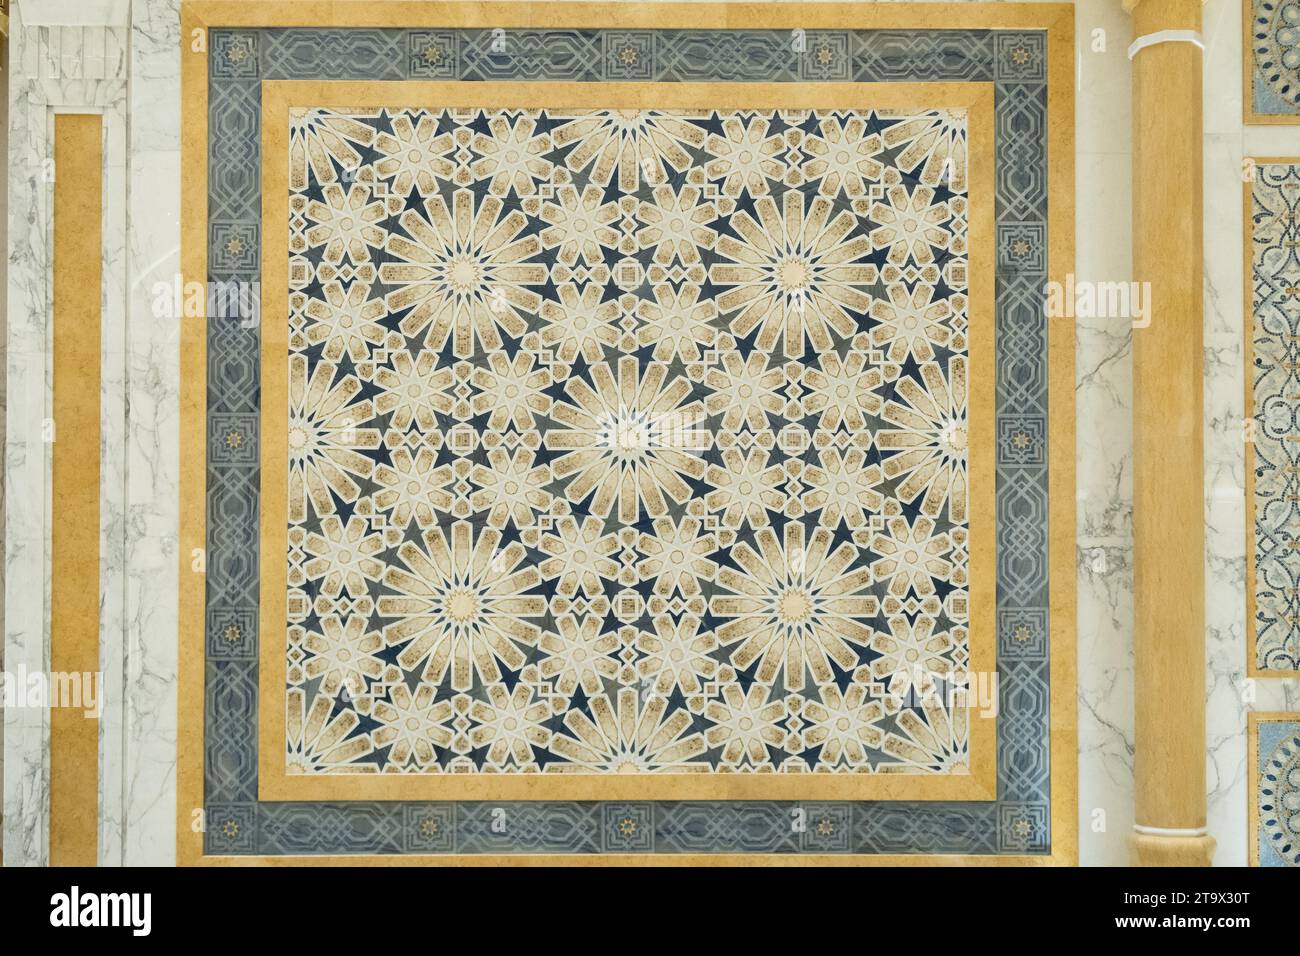 Abu Dhabi, VAE, 08.02.20. Arabischer Stil, Mosaik aus Granit und Marmor mit geometrischen Sternen- und Blumenmotiven, Mustern und goldenen Säulen in den Vereinigten Arabischen Emiraten Stockfoto